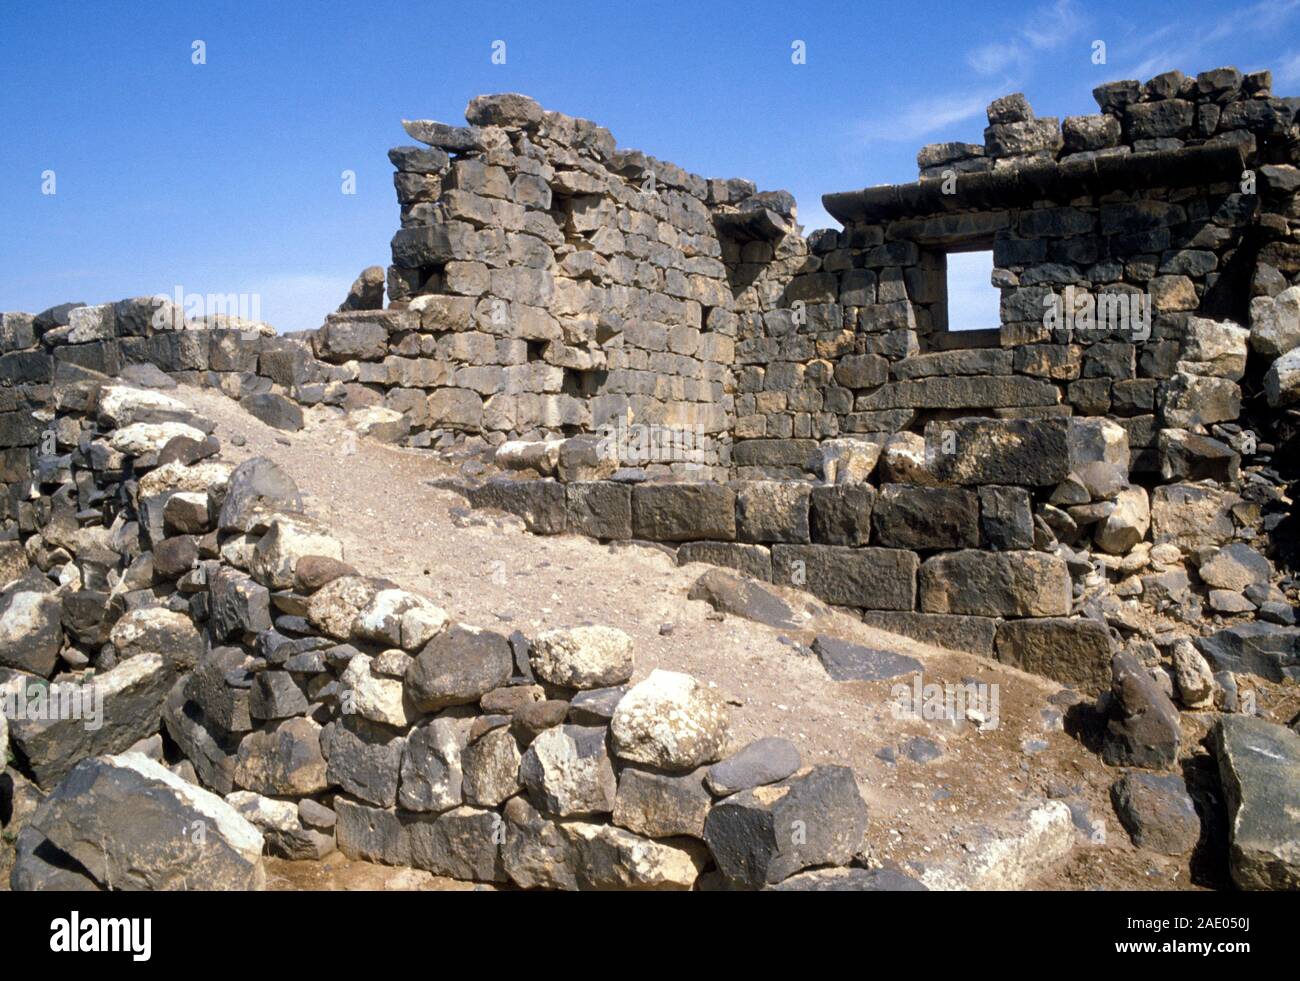 Le rovine di una chiesa bizantina risalente 5-7Th secoli in Umm al-Jimal, Giordania. Un totale di 17 edifici rovinati rimangono da questo periodo. Foto Stock